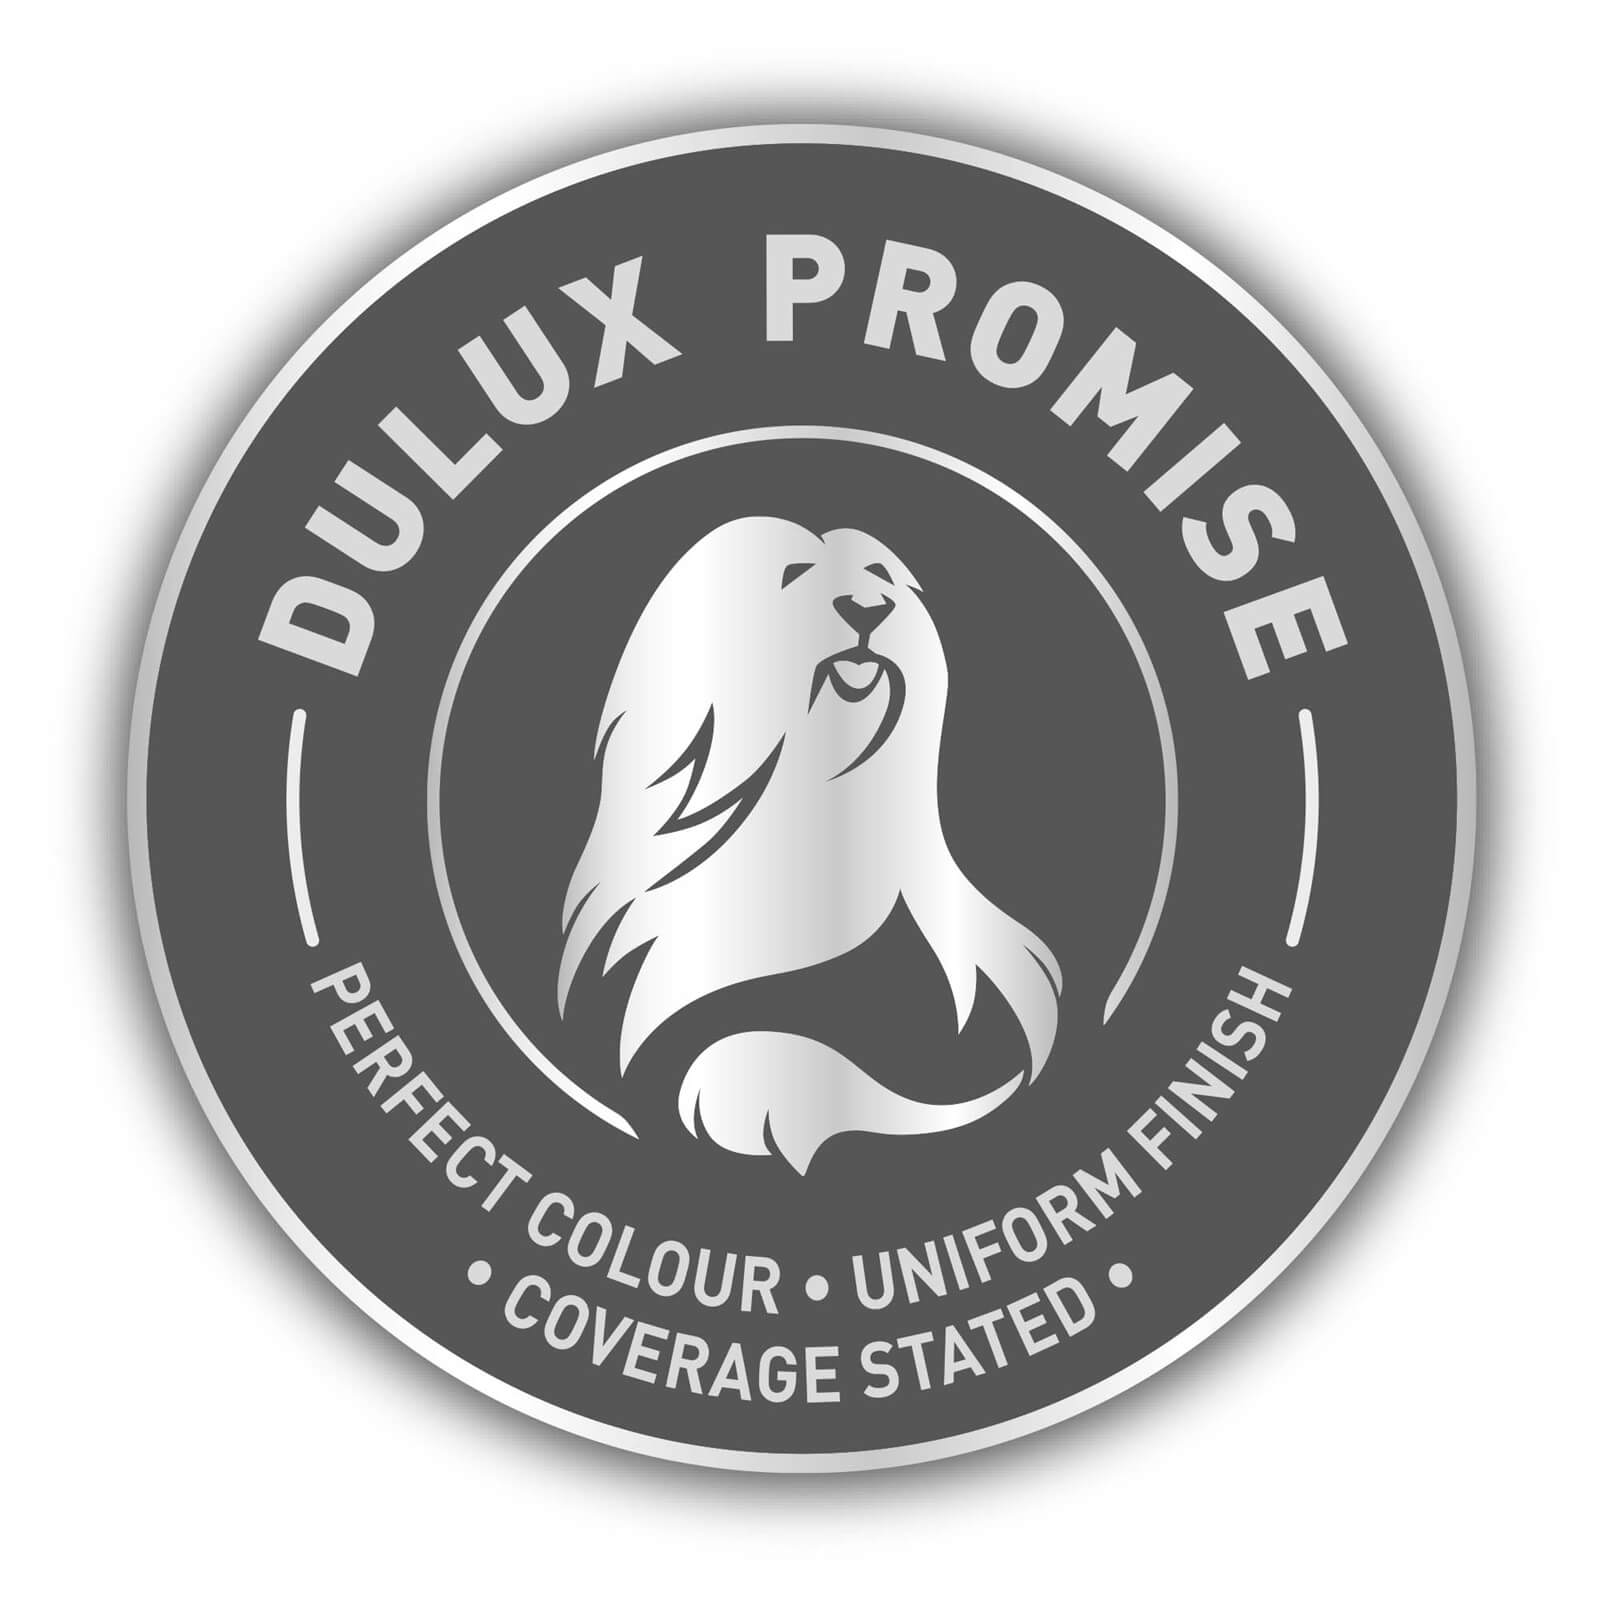 Dulux Silk Emulsion Paint Ivory - 5L